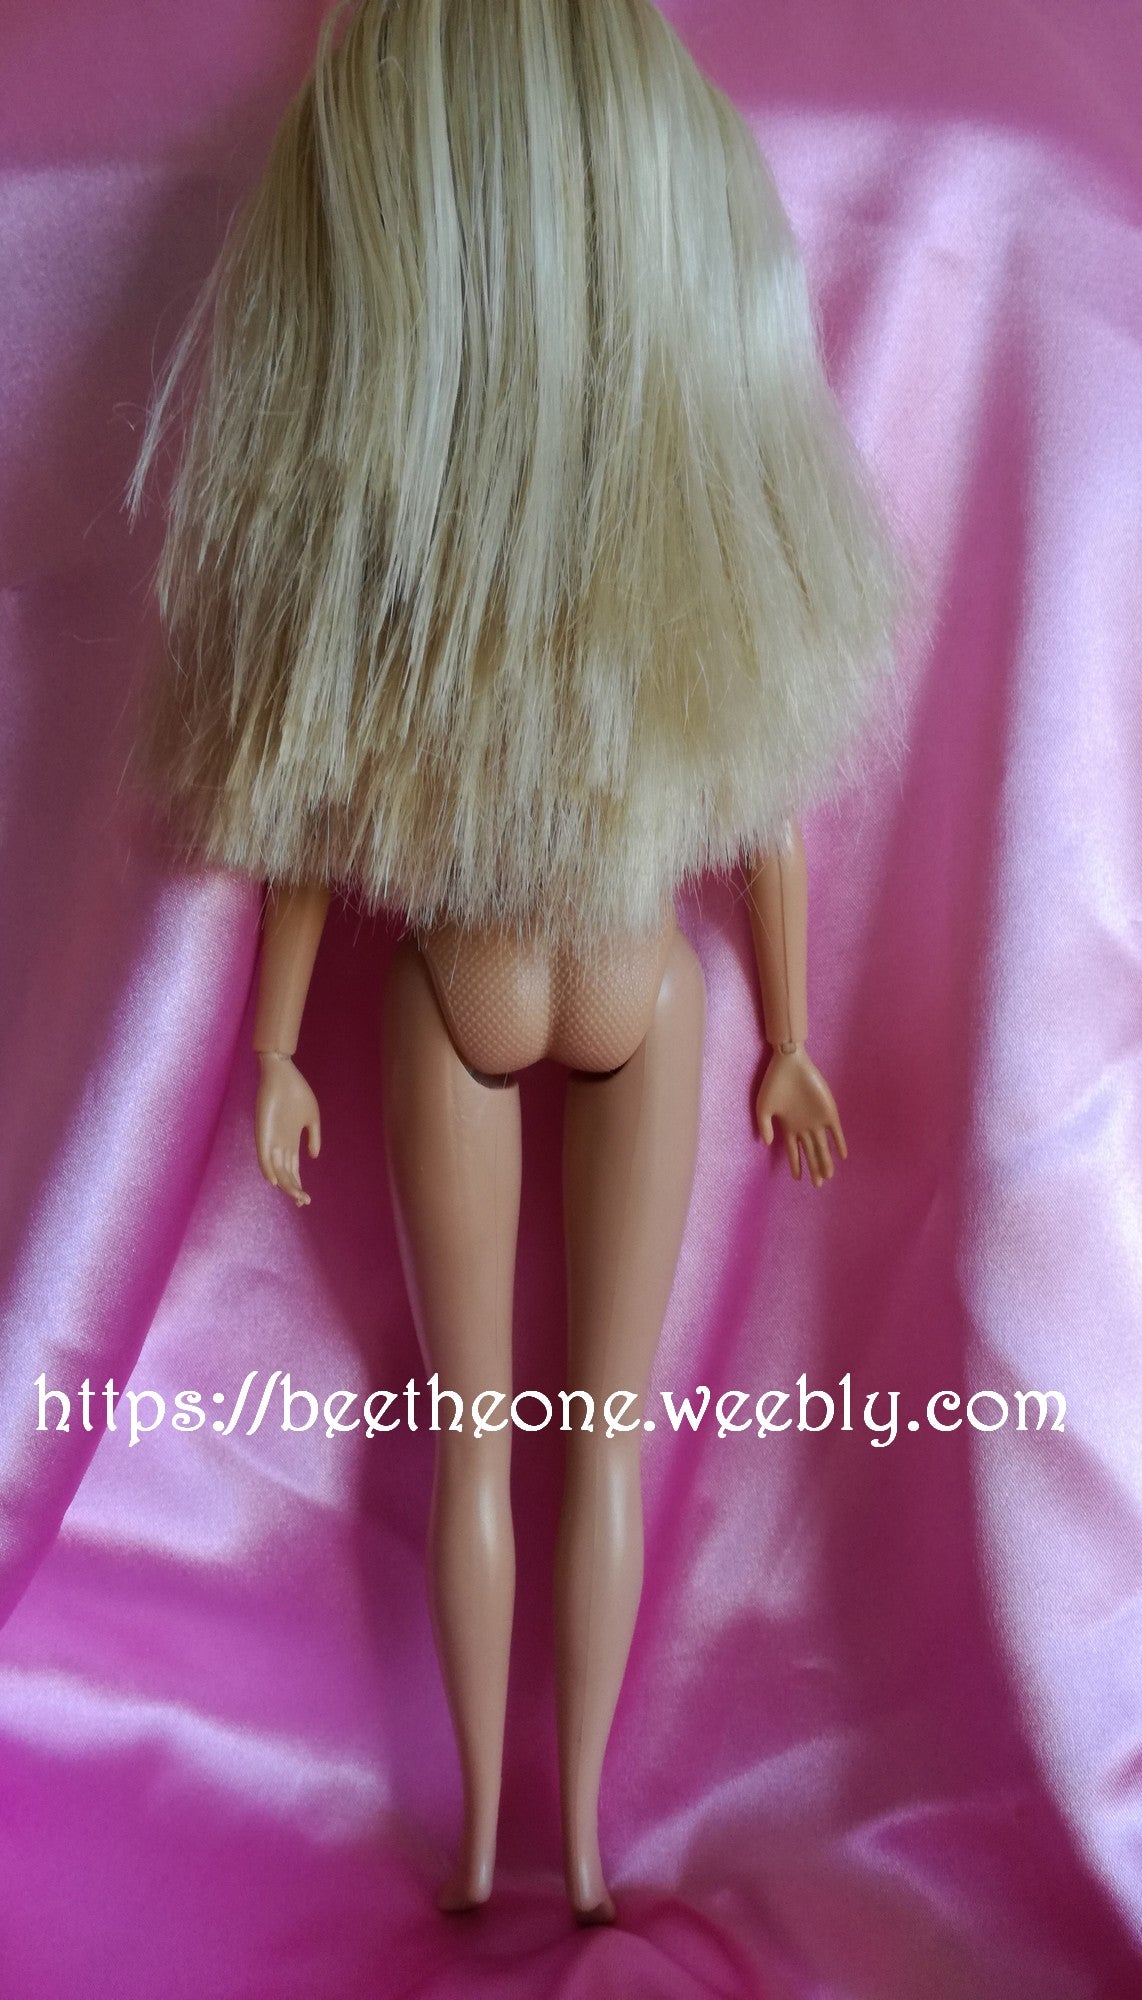 Barbie Diva Fashion Robe rose - Mattel 2005 - Vêtement